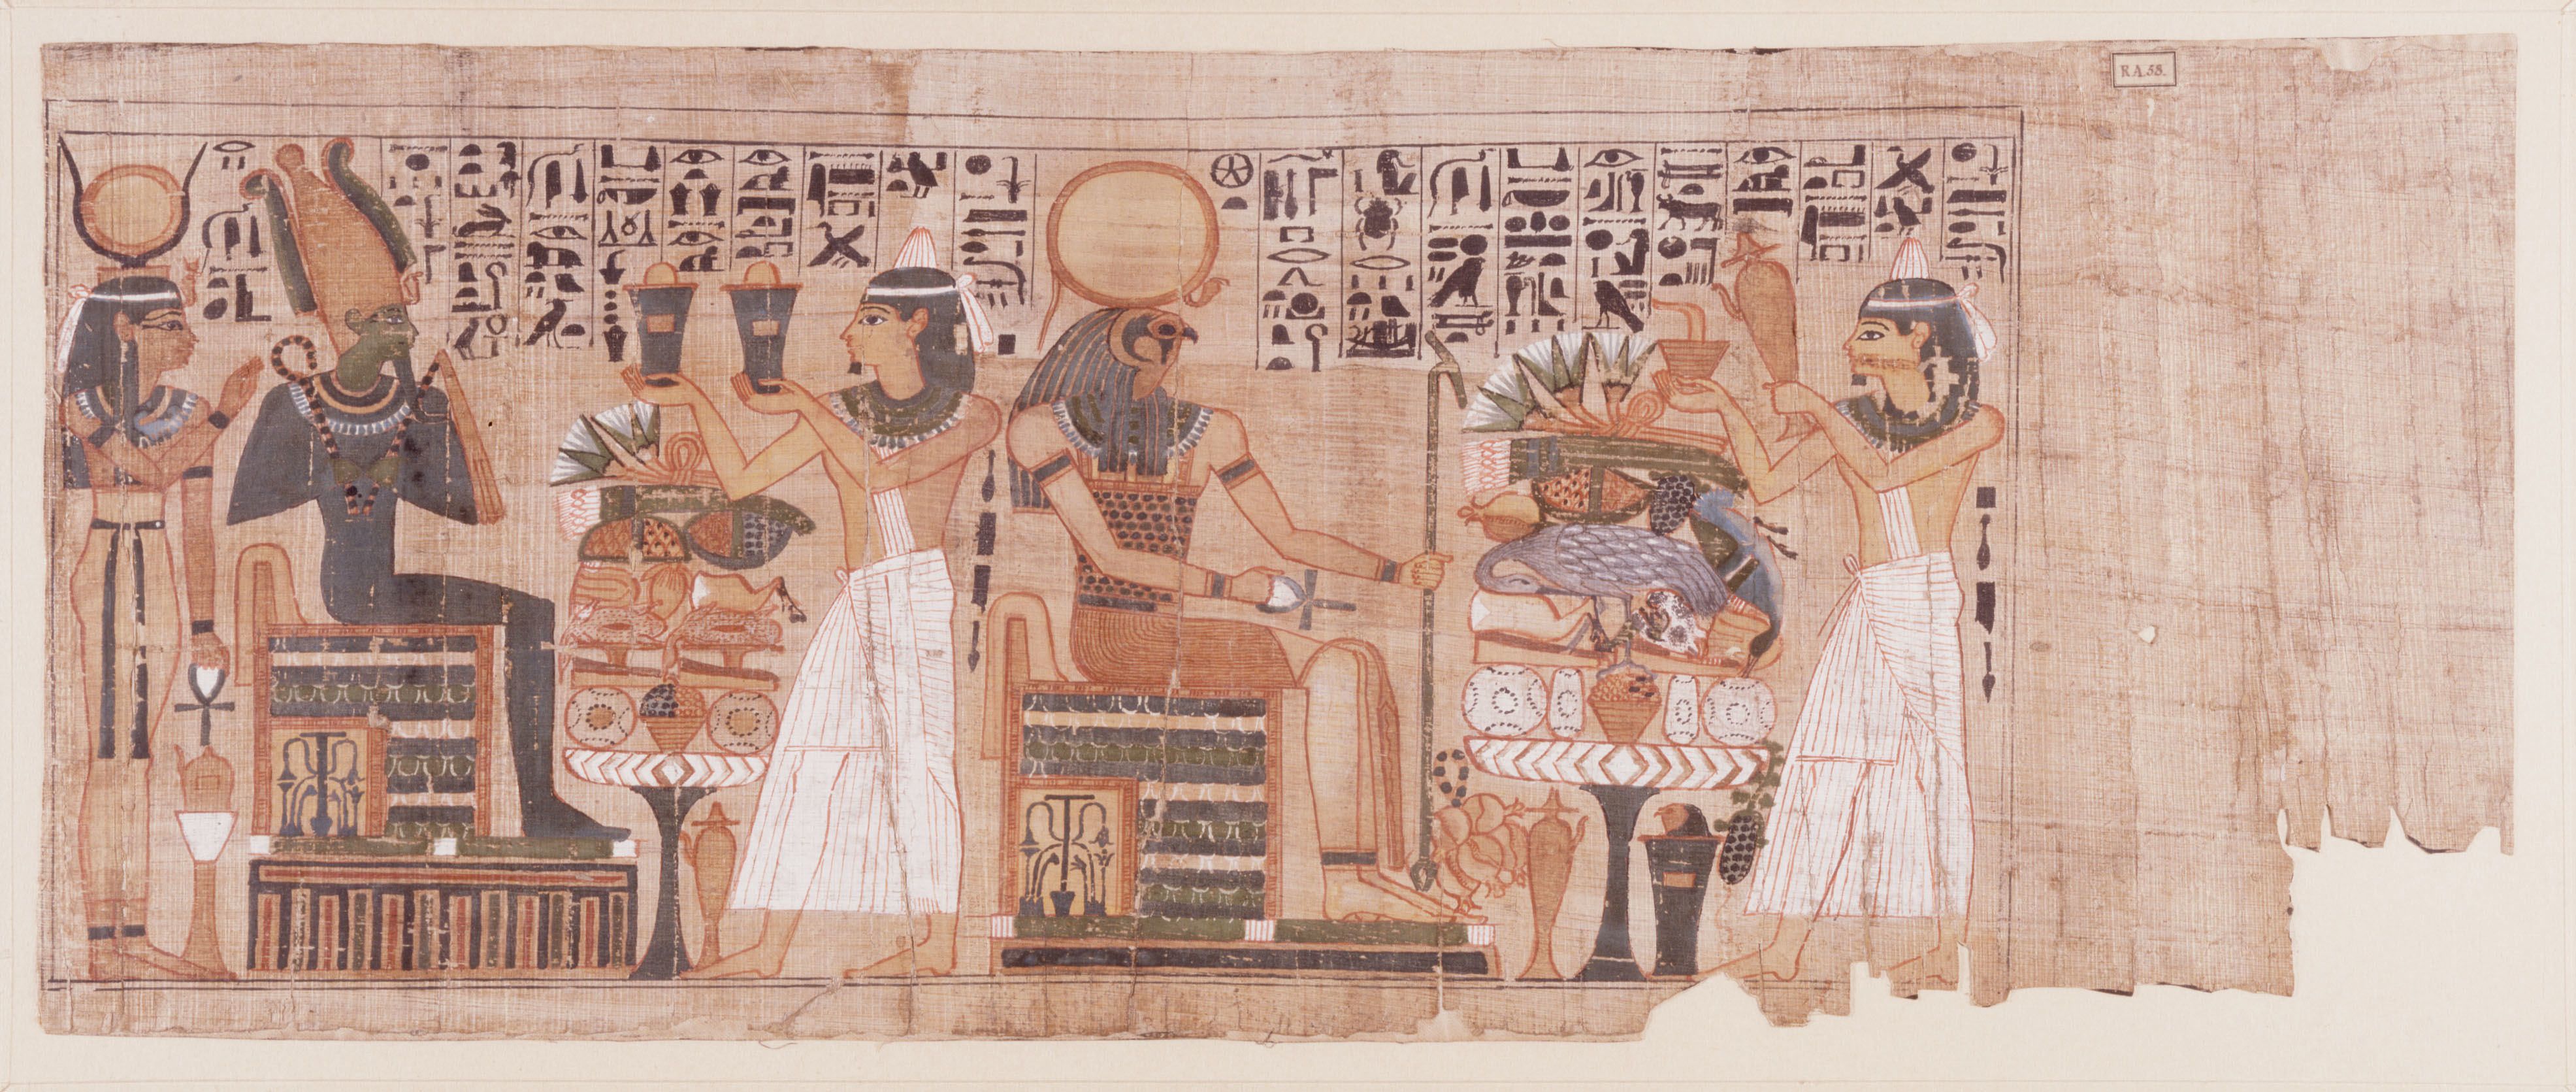 『ライデン国立古代博物館所蔵 古代エジプト展』「パディコンスの『死者の書』」